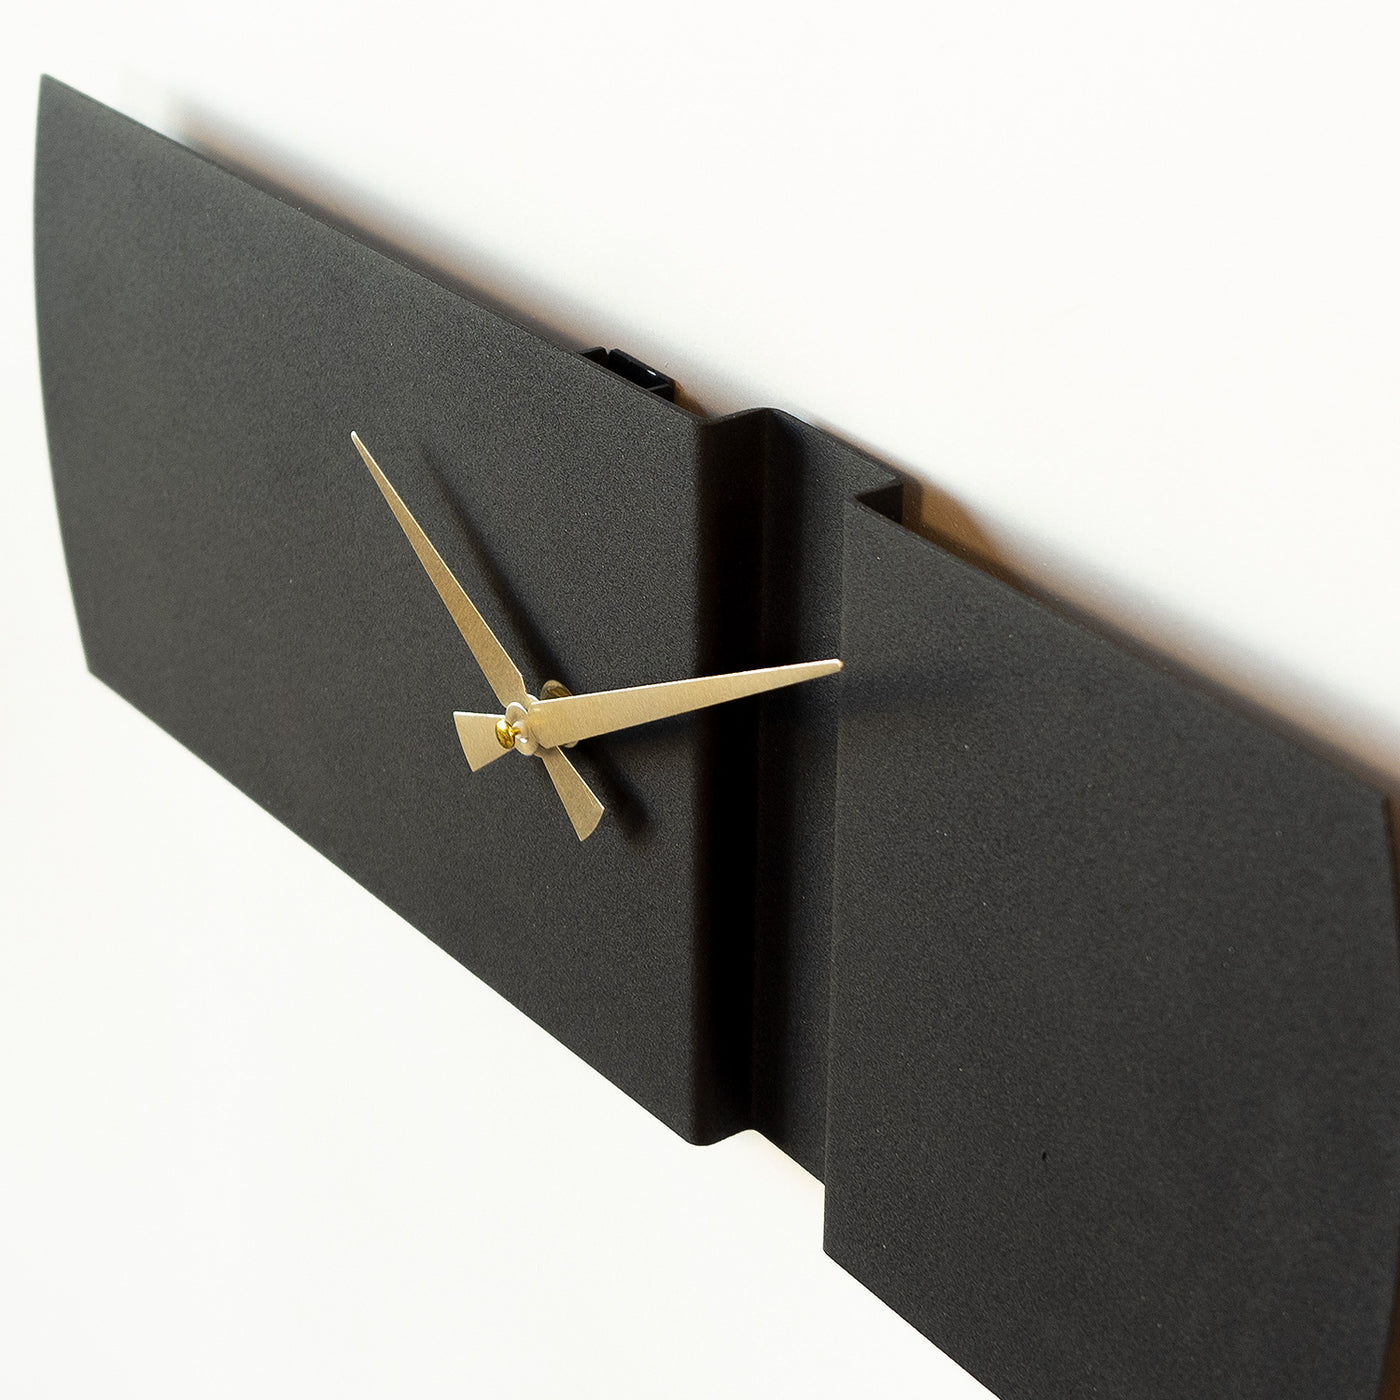 3D Rectangular Metal Modern Wall Clock - Silent Mechanism